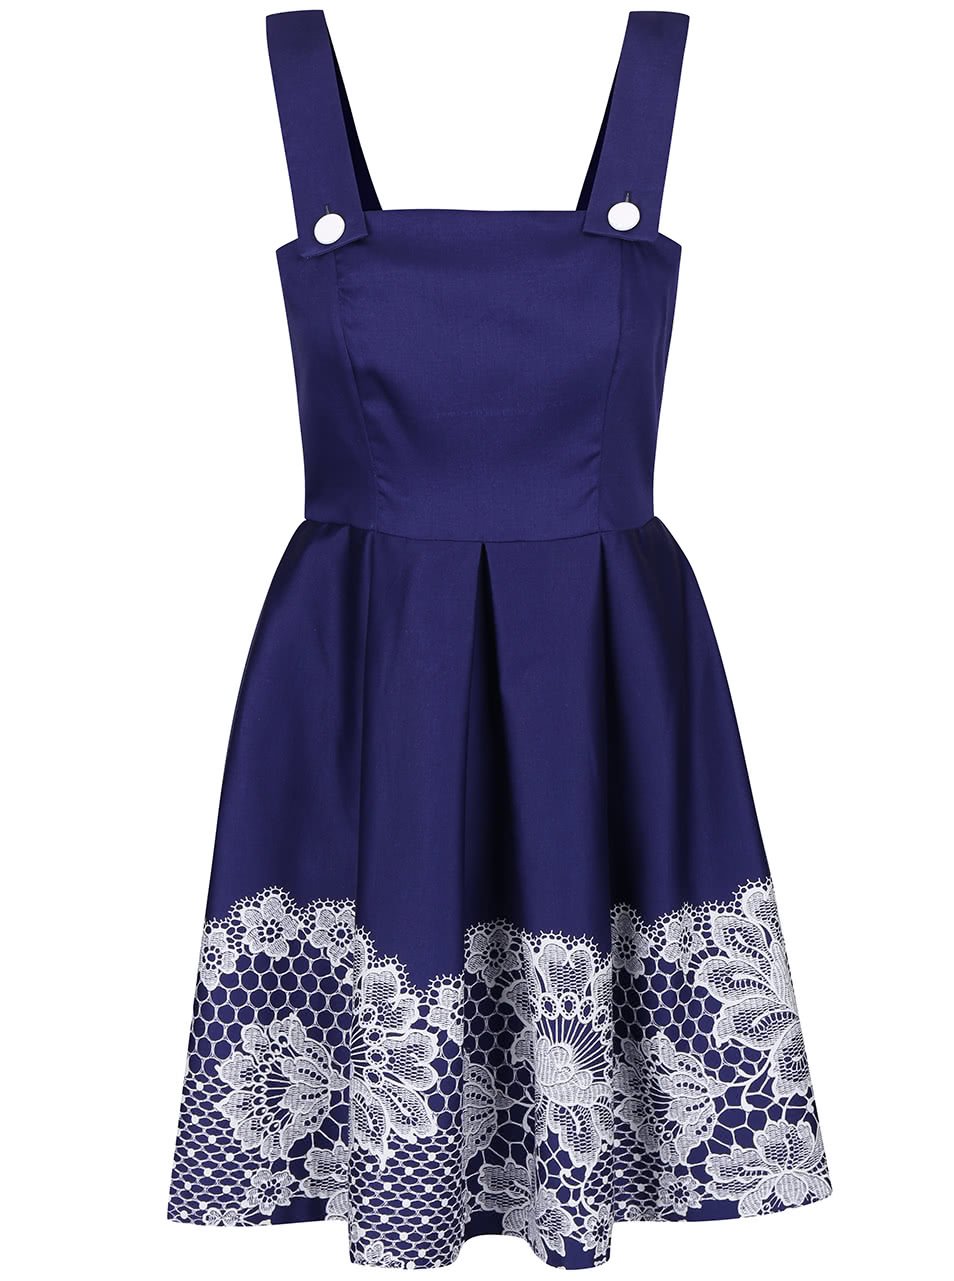 Modré šaty s potiskem krajky Closet